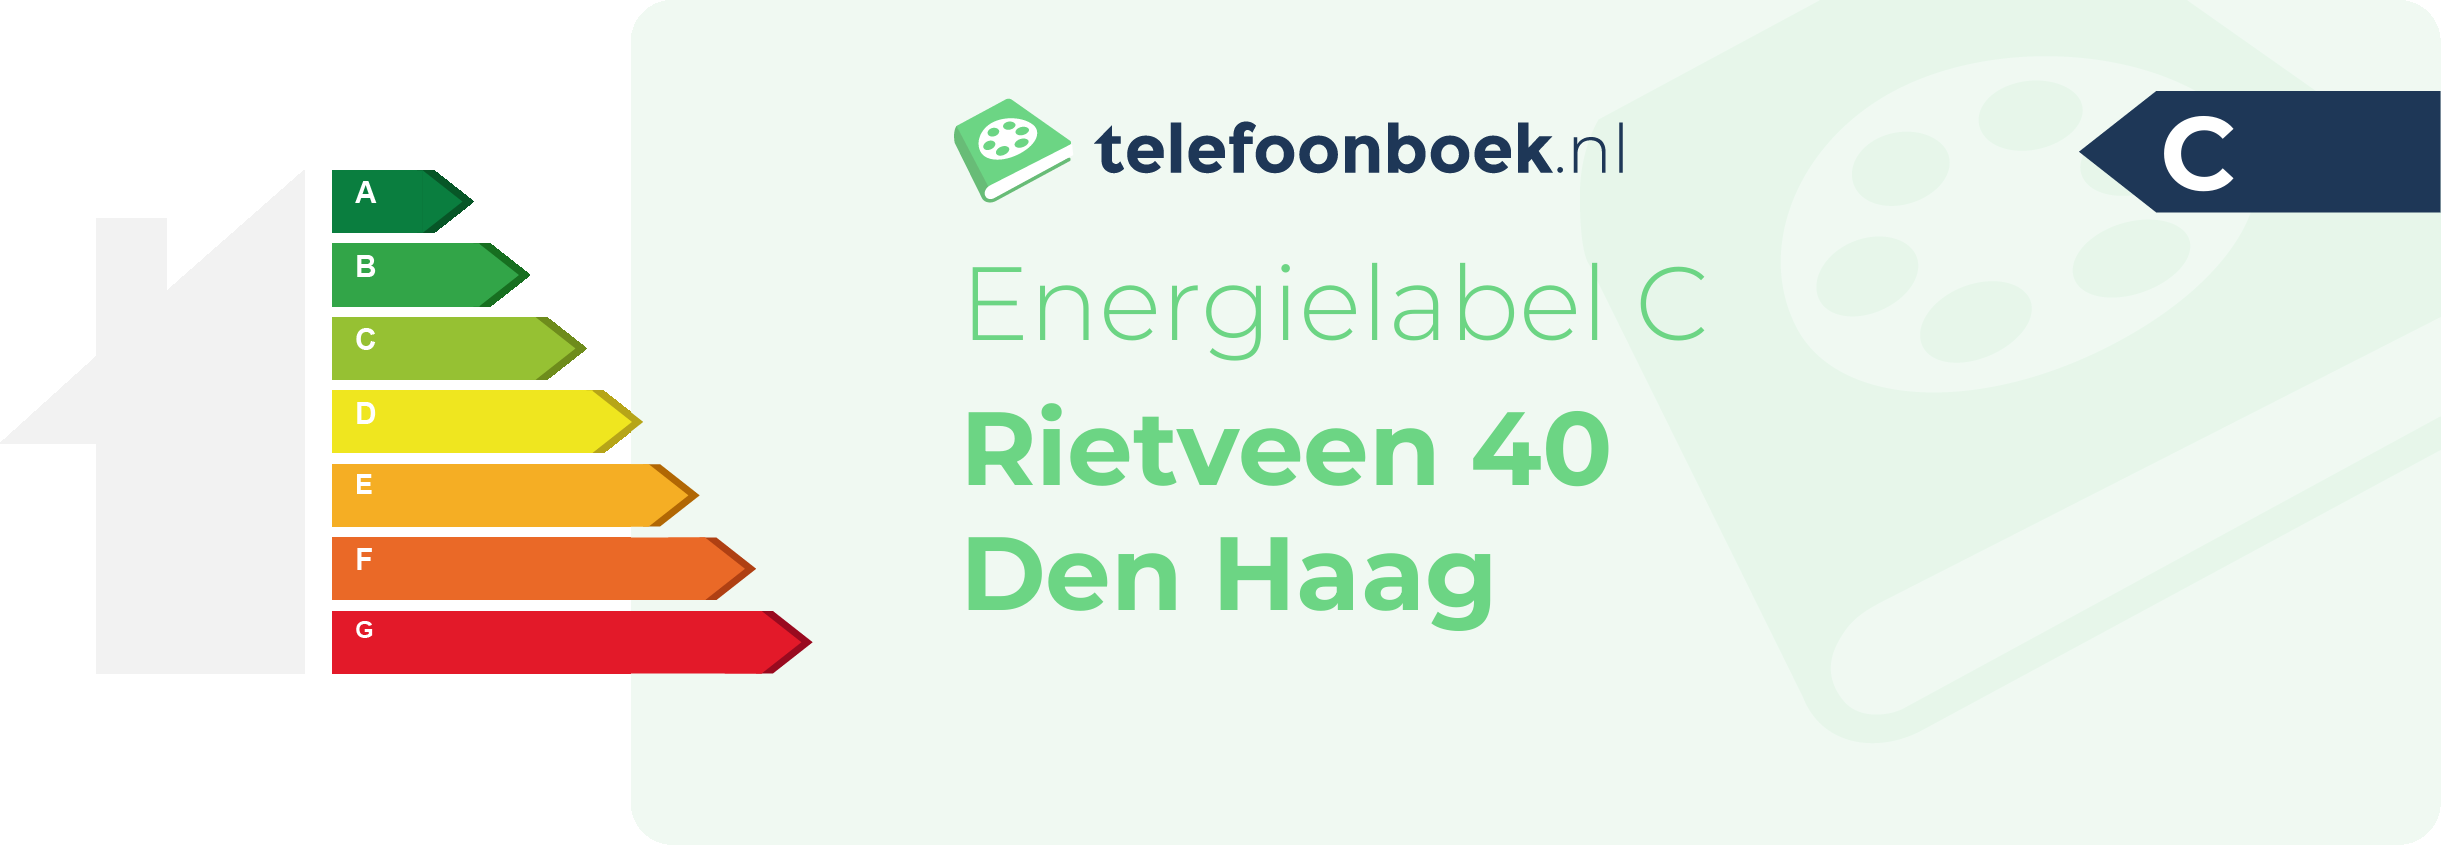 Energielabel Rietveen 40 Den Haag